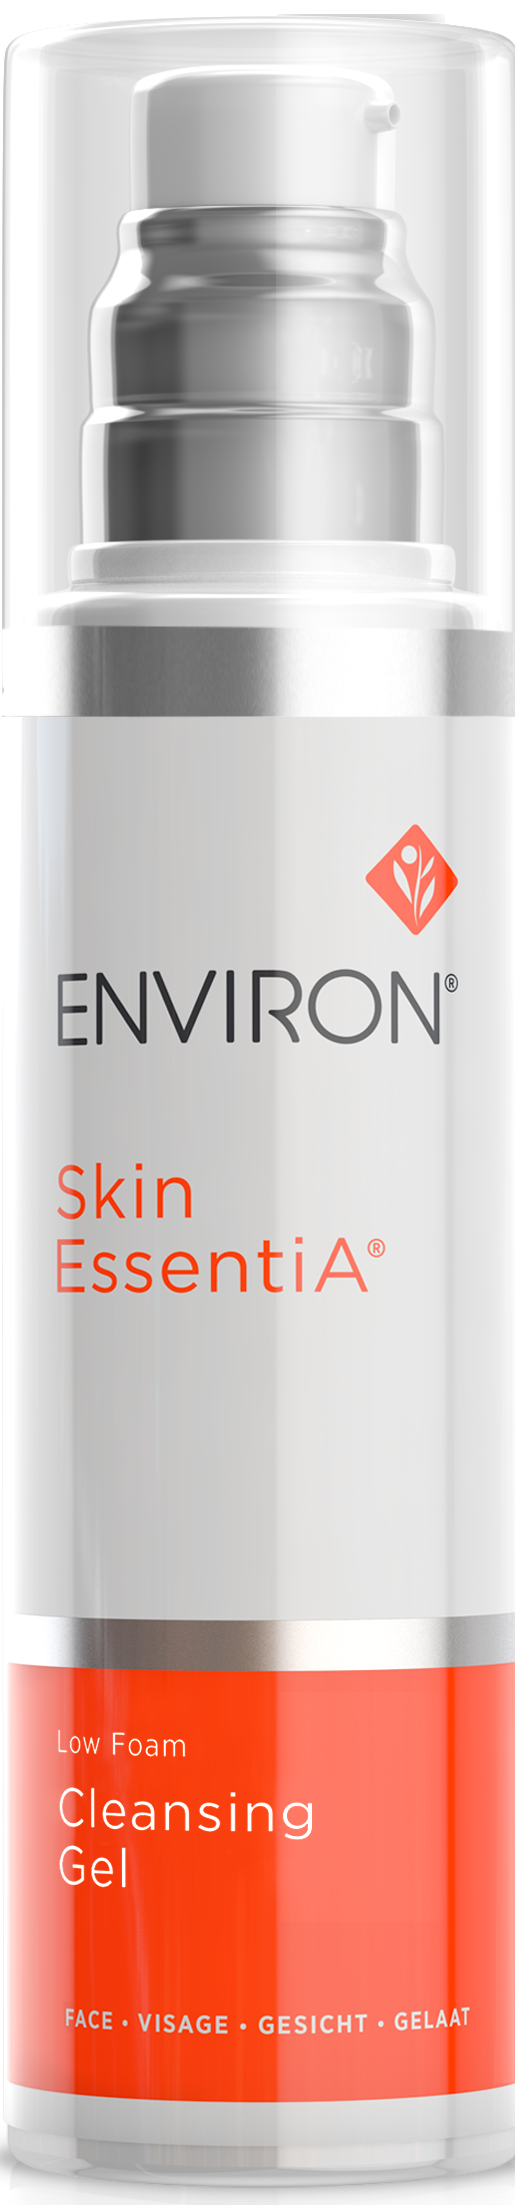 Environ Skin EssentiA Low Foam Cleansing Gel